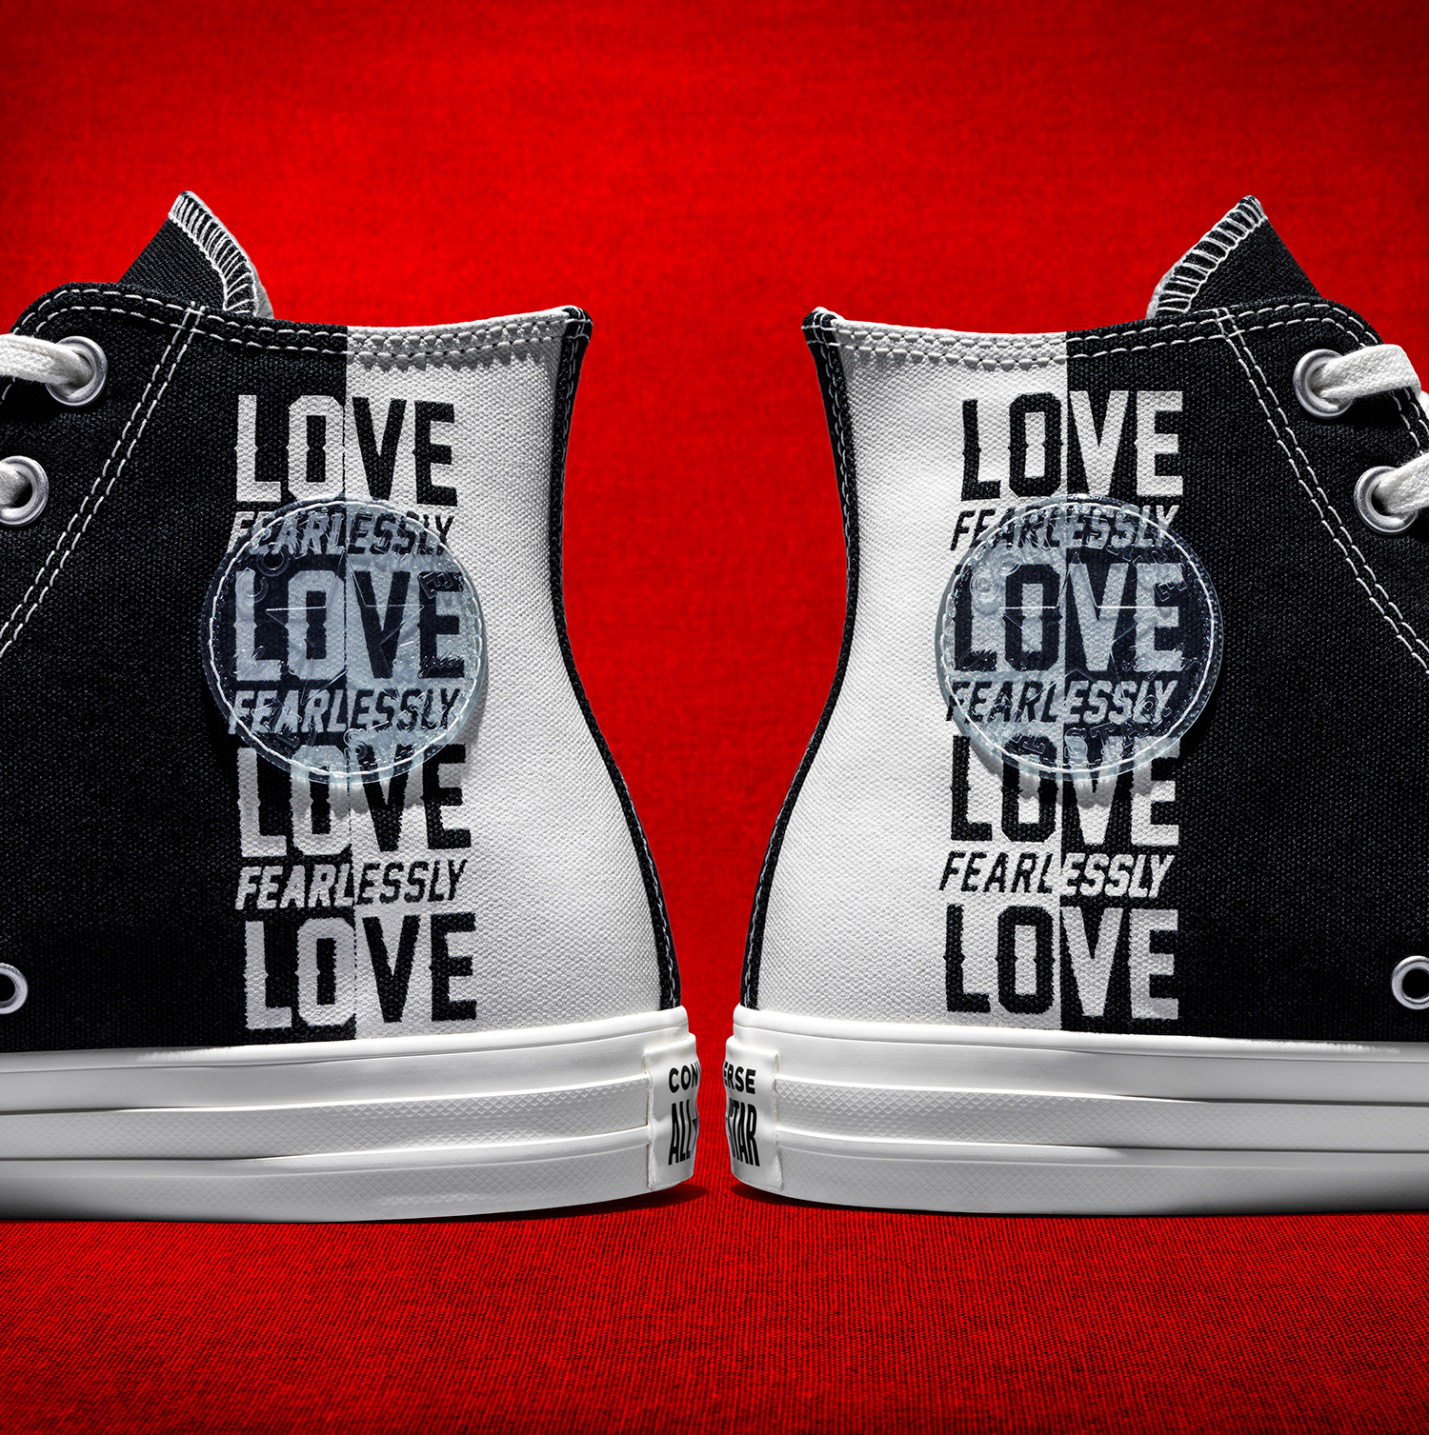 Converse cho ra mắt BST được thiết kế từ thông điệp hợp thời 4.0 “Love Yourself First” - Ảnh 2.